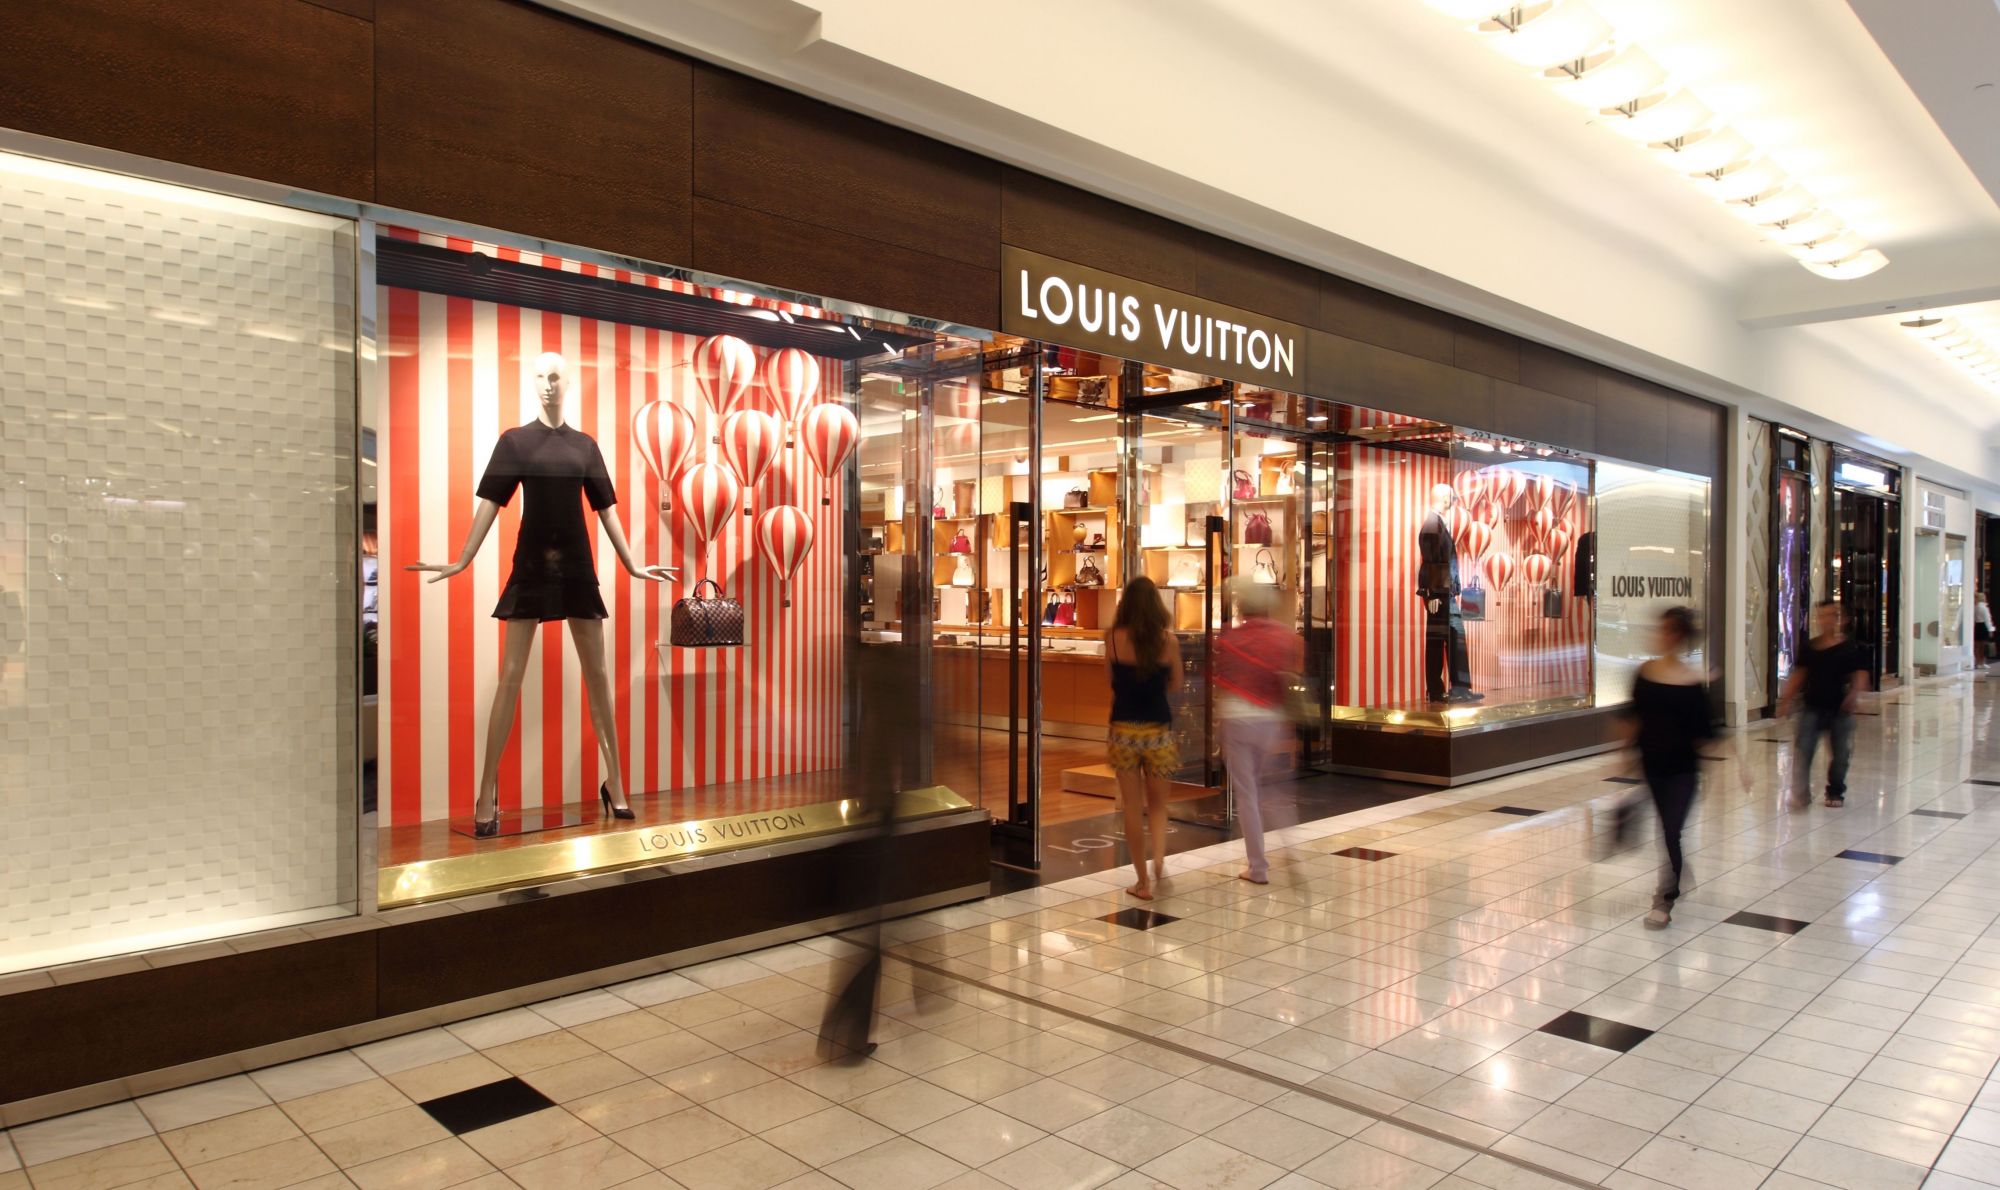 Louis Vuitton at Phipps Plaza - A Shopping Center in Atlanta, GA - A Simon  Property